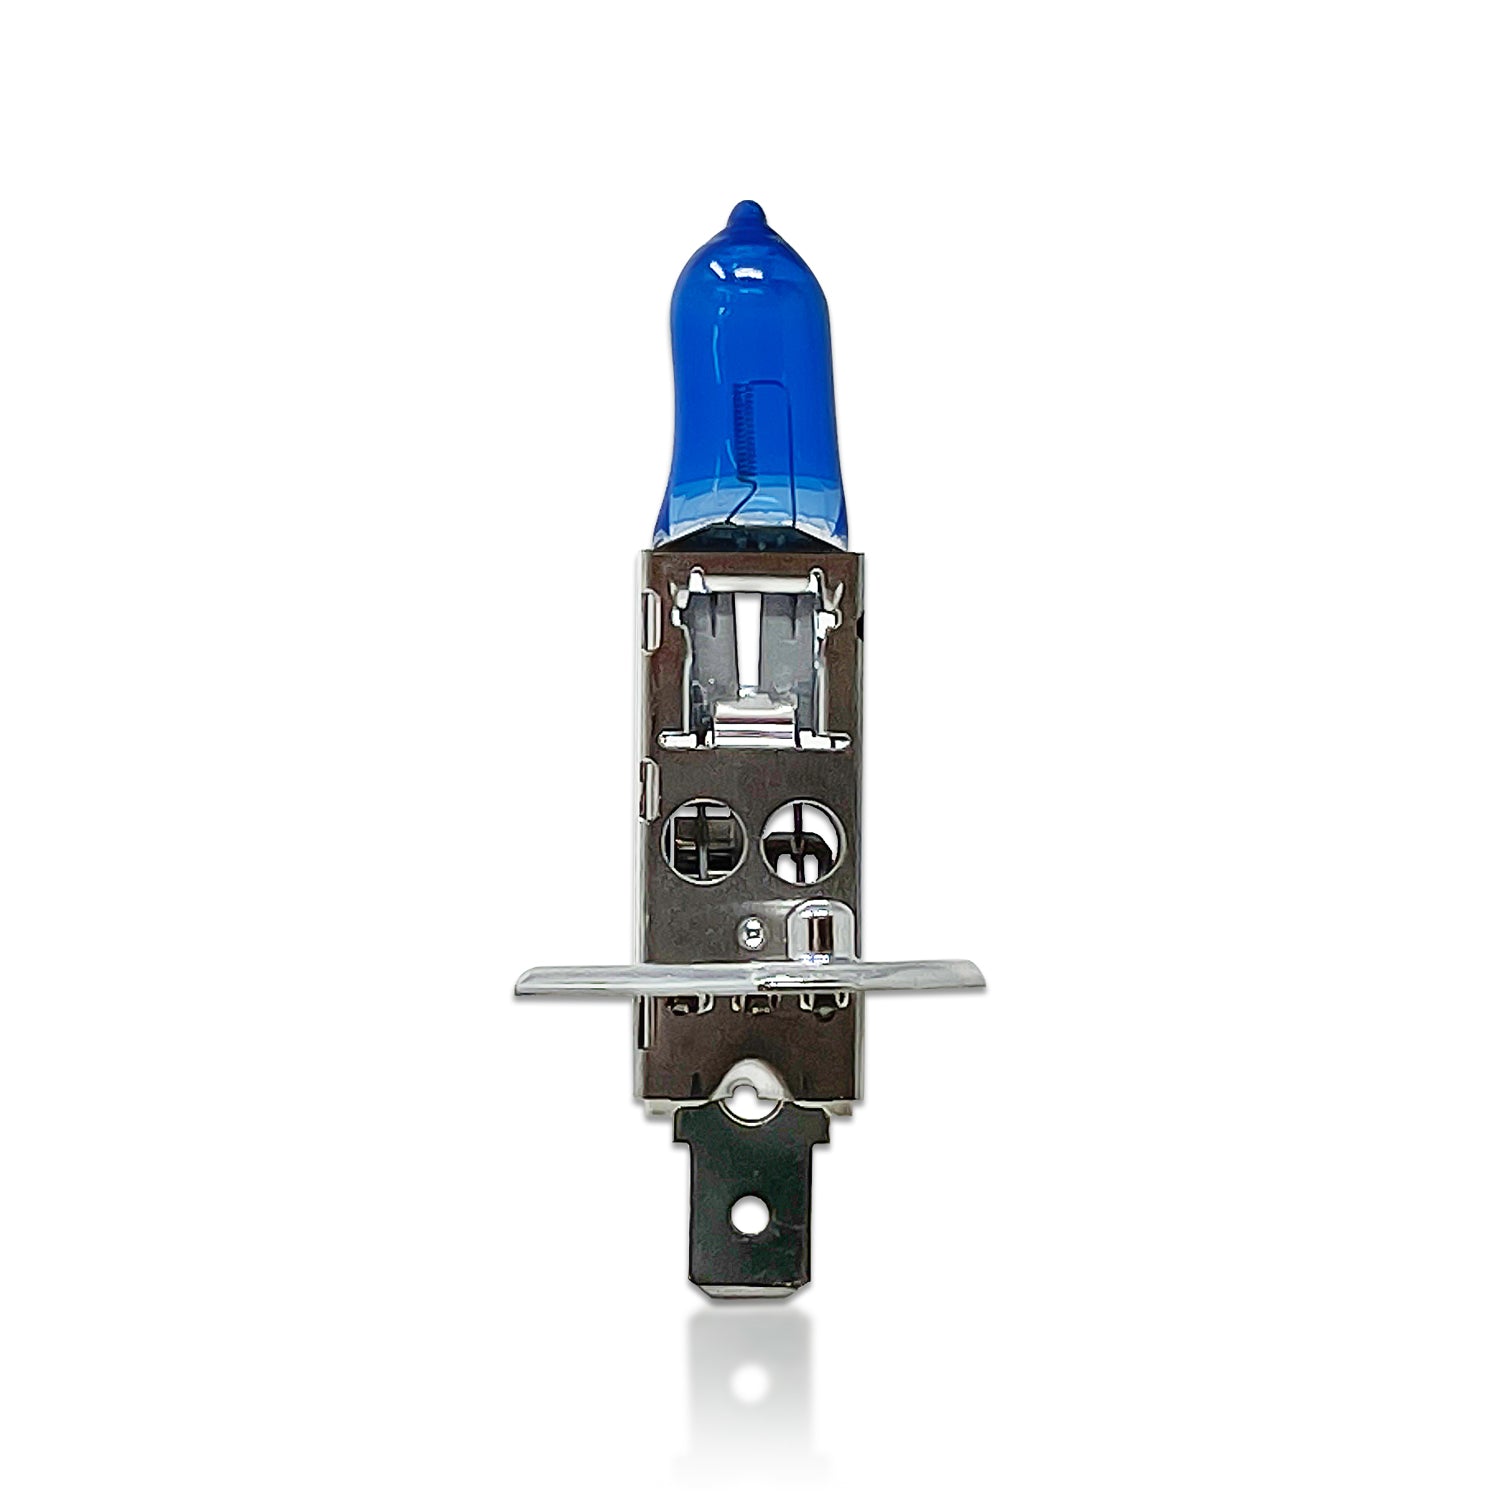 Xénon H1 Osram Cool Blue Boost 5000K bulbs - 62150CBB